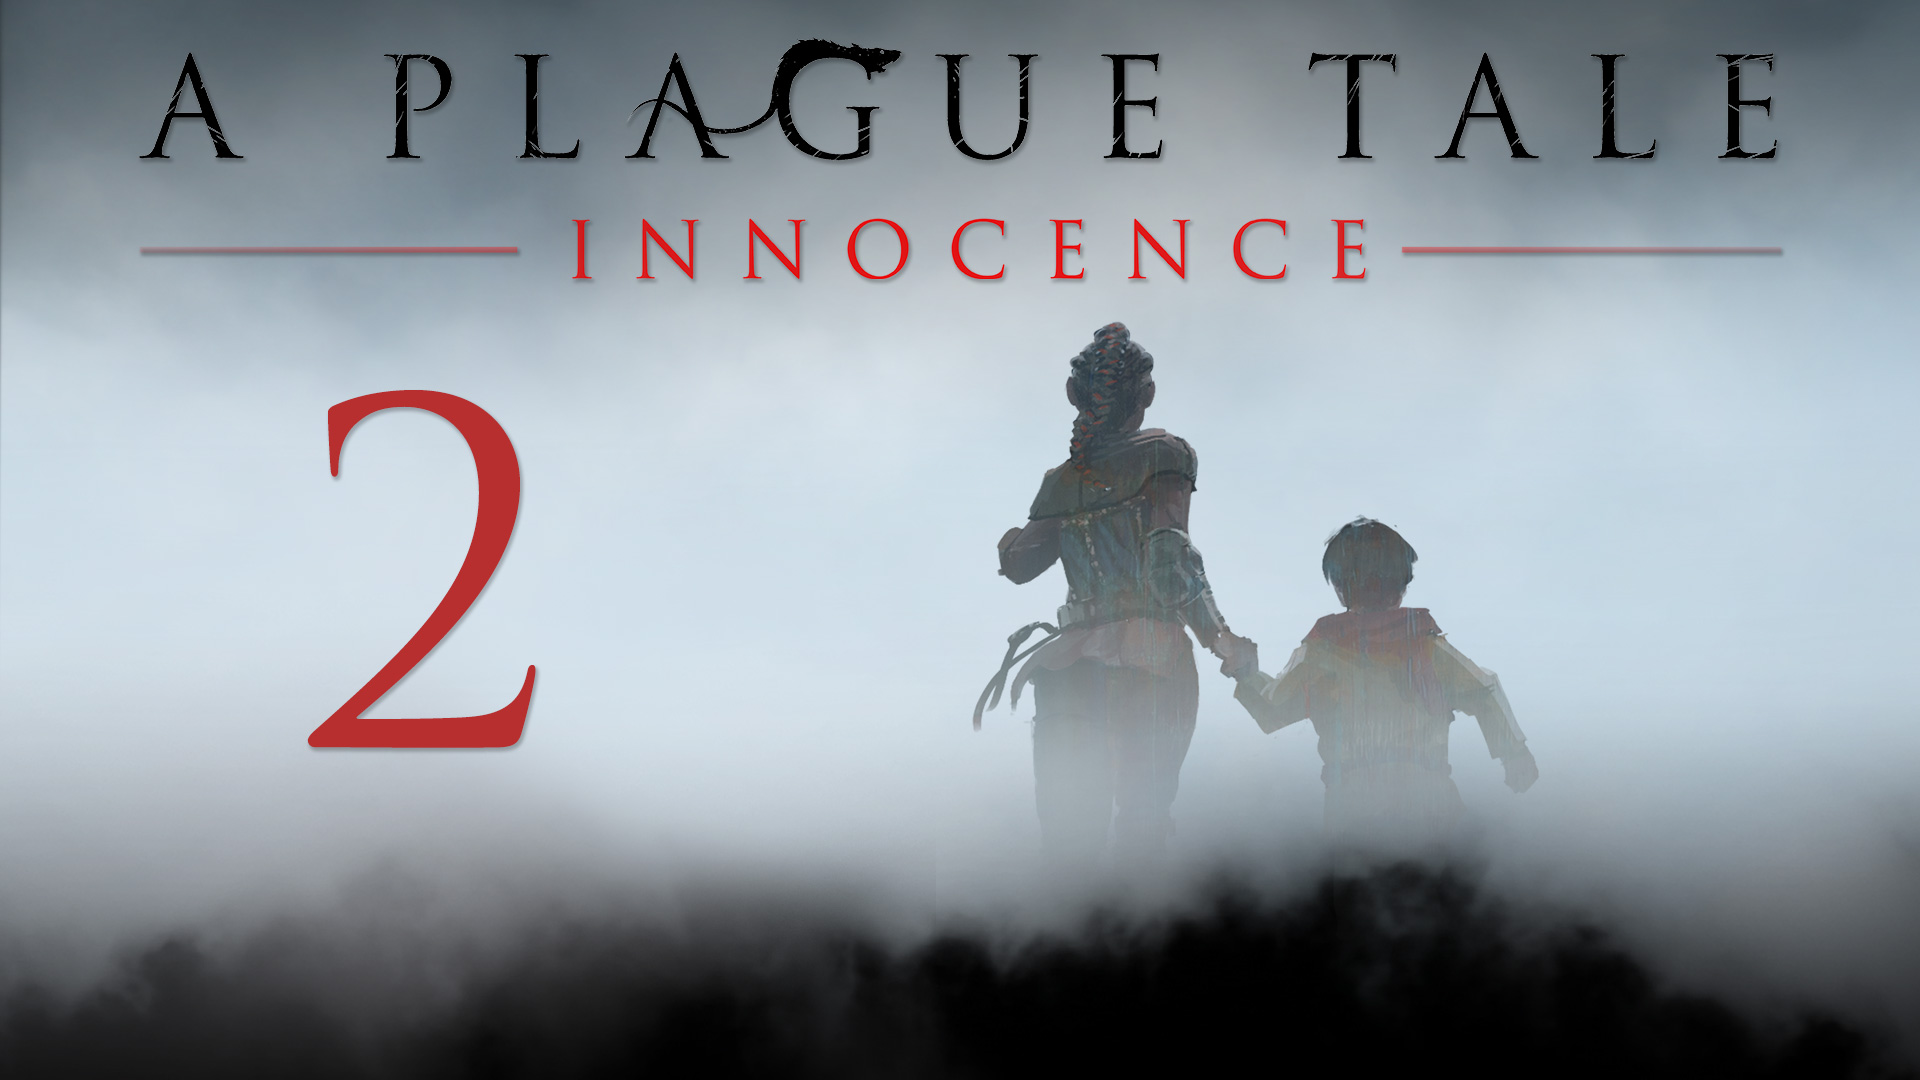 A Plague Tale: Innocence - Глава 2: Незнакомцы - Прохождение игры на русском [#2] | PC (2019 г.)